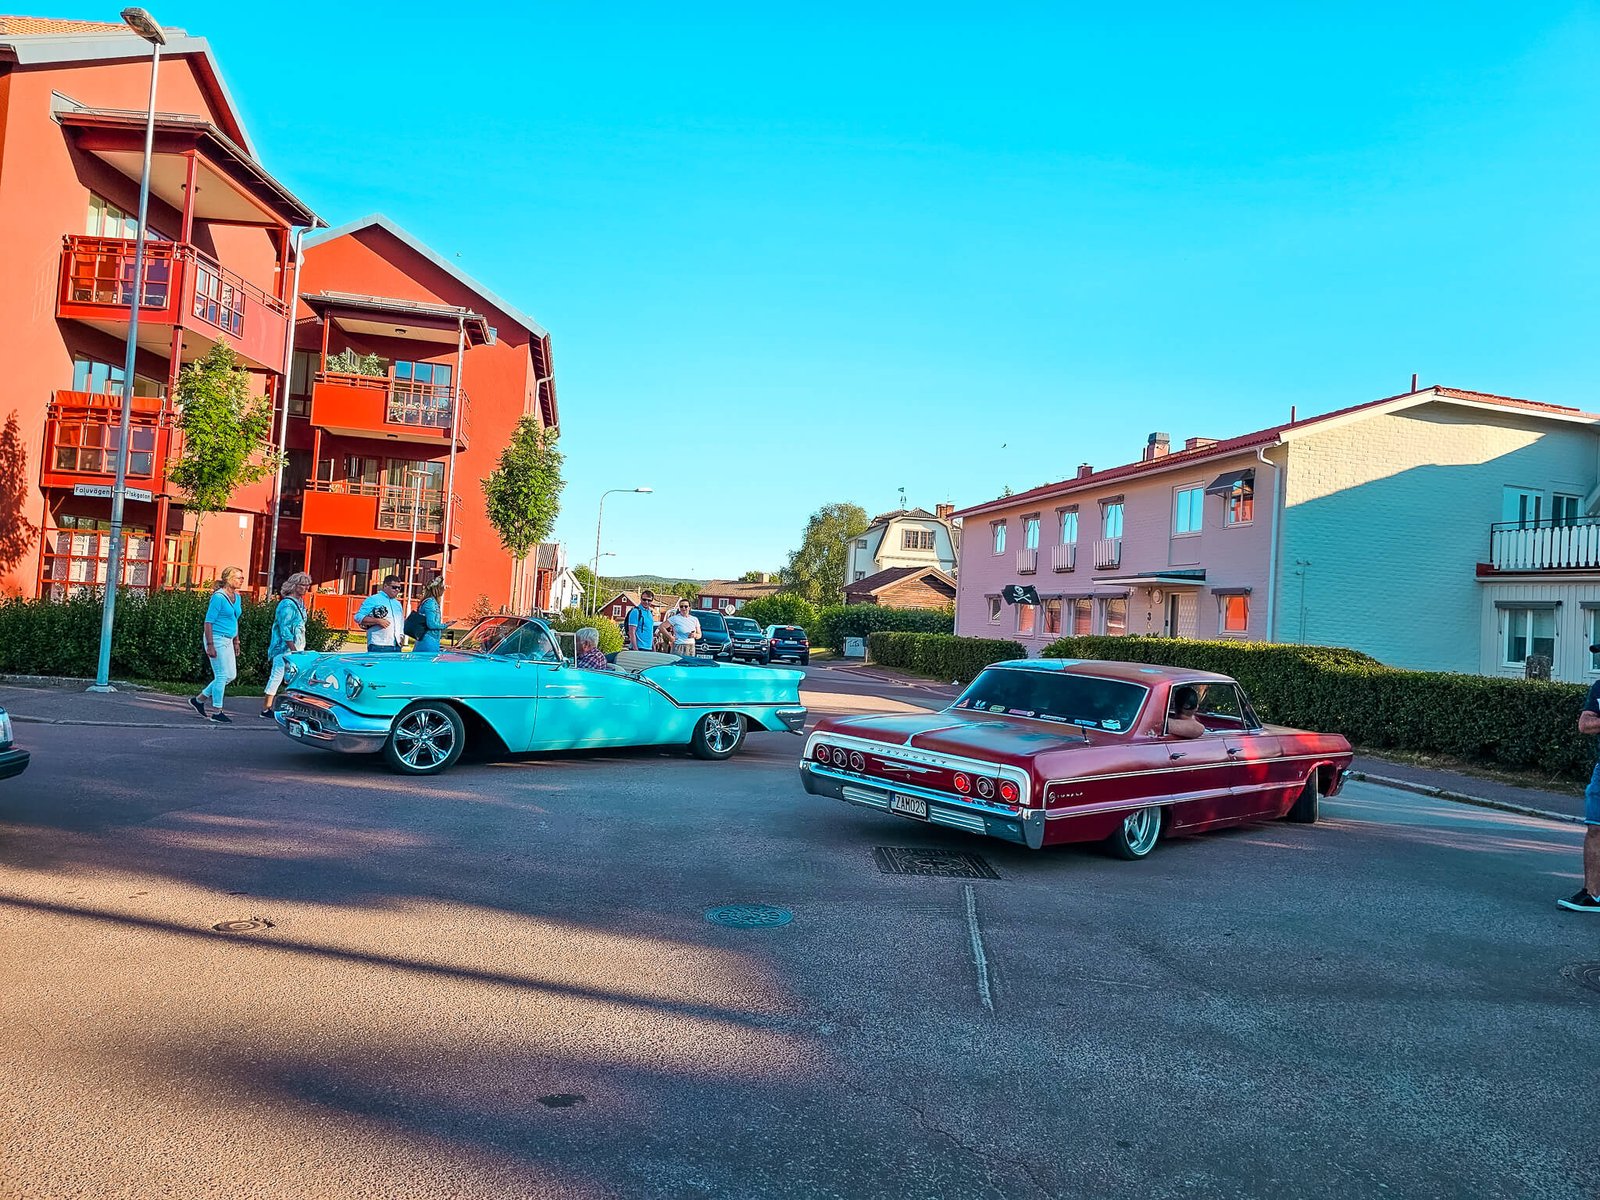 cars in Sweden during Midsummer